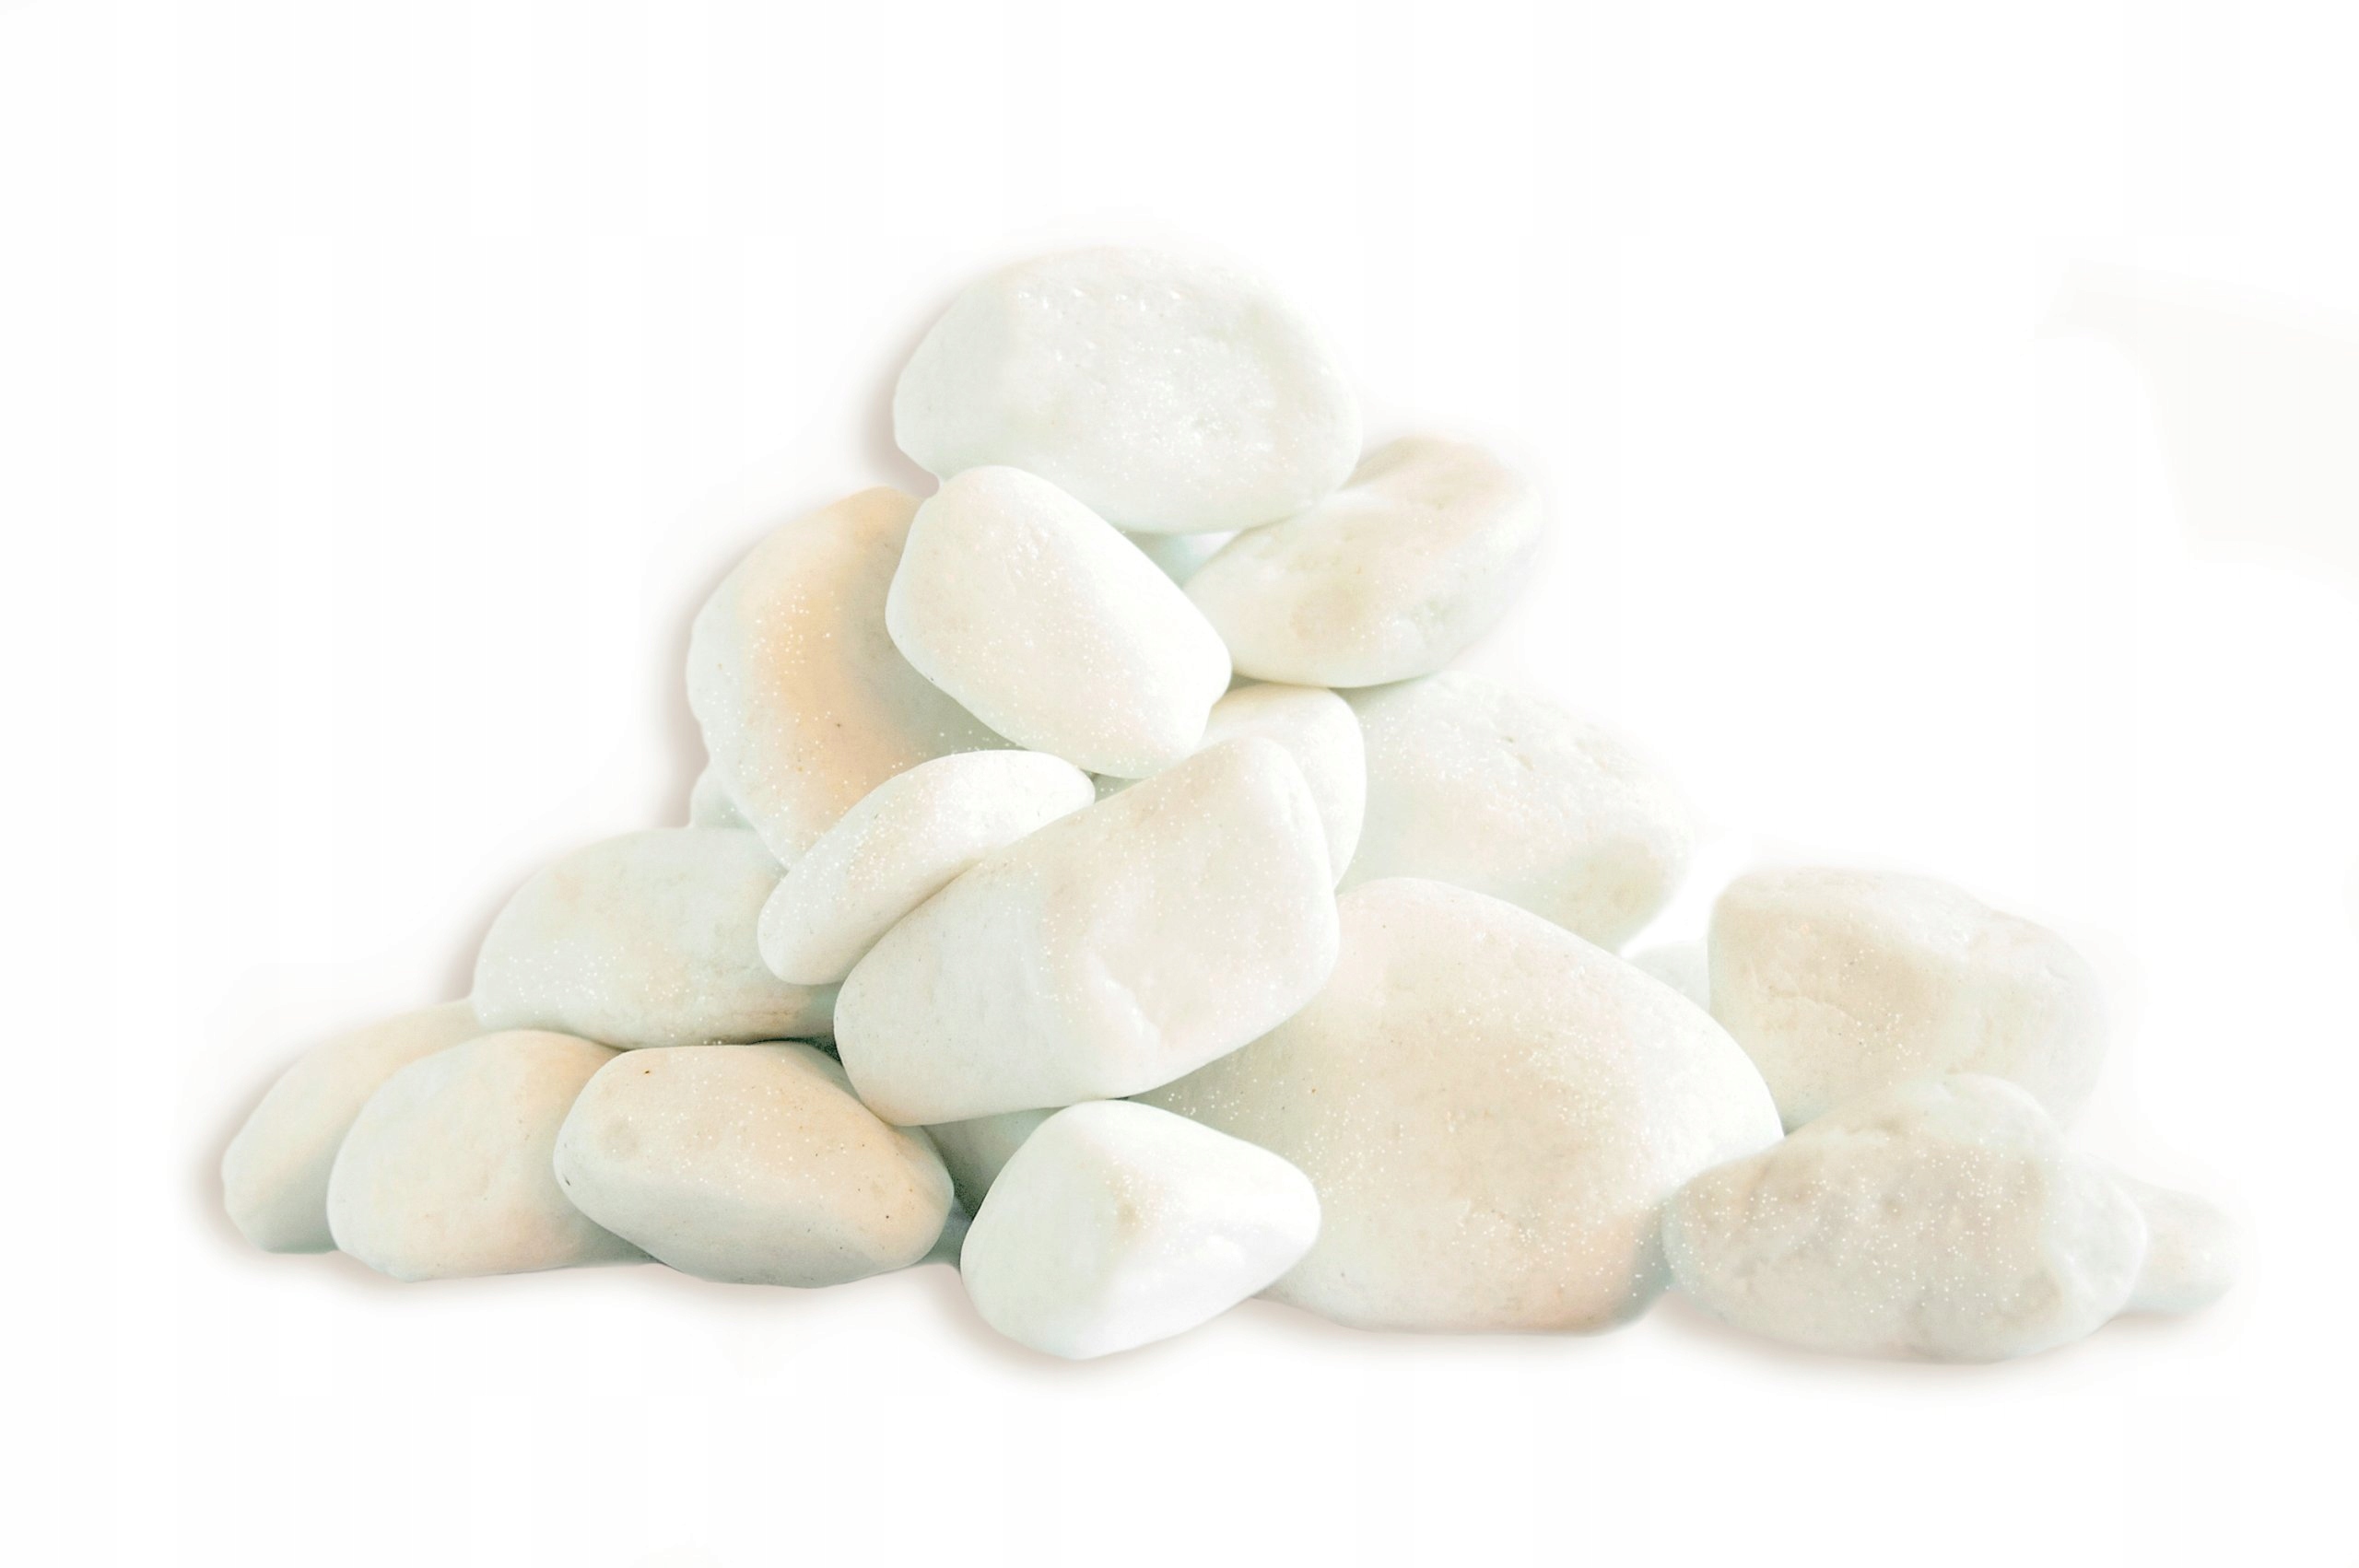 22 stones. Галька на белом фоне. Морские камни на белом фоне. Белый камень. Белые камешки.